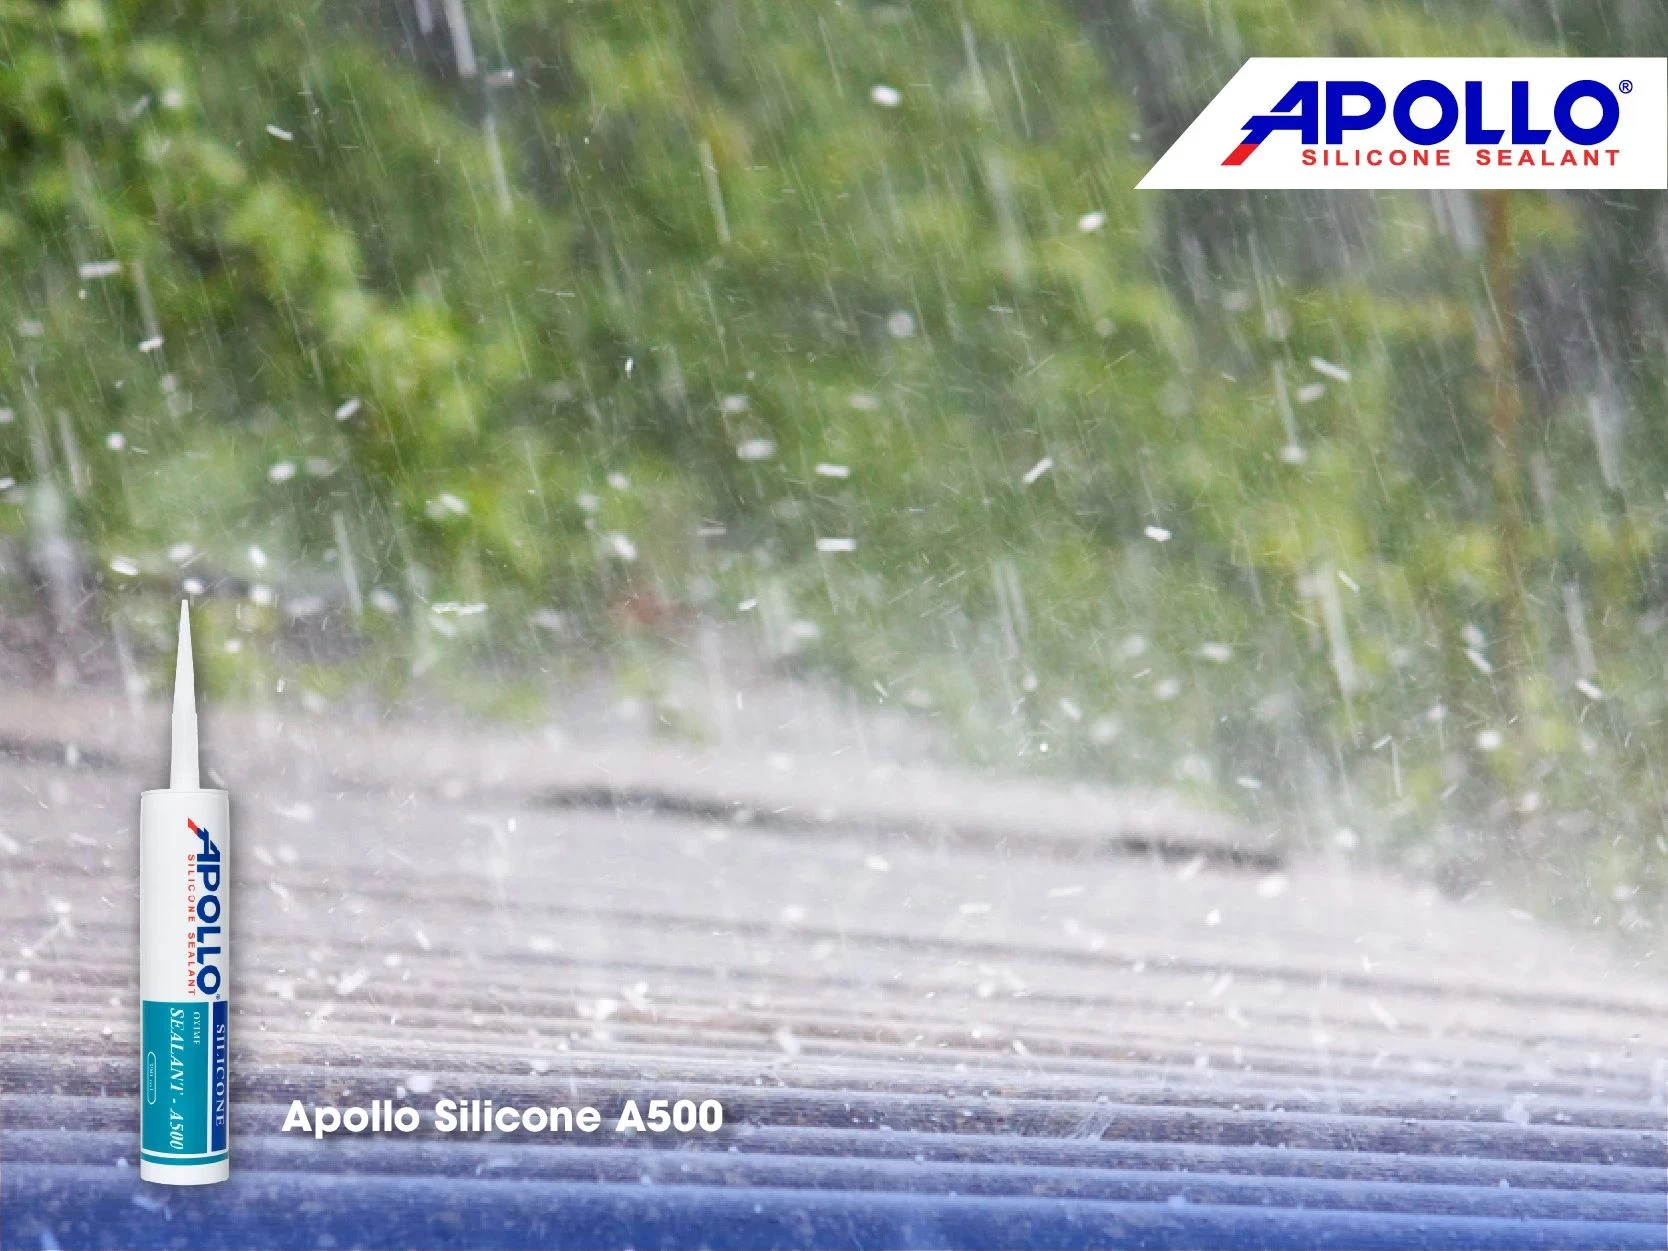 Apollo Silicone A500 giải pháp tối ưu cho việc chống thấm mái tôn nhựa